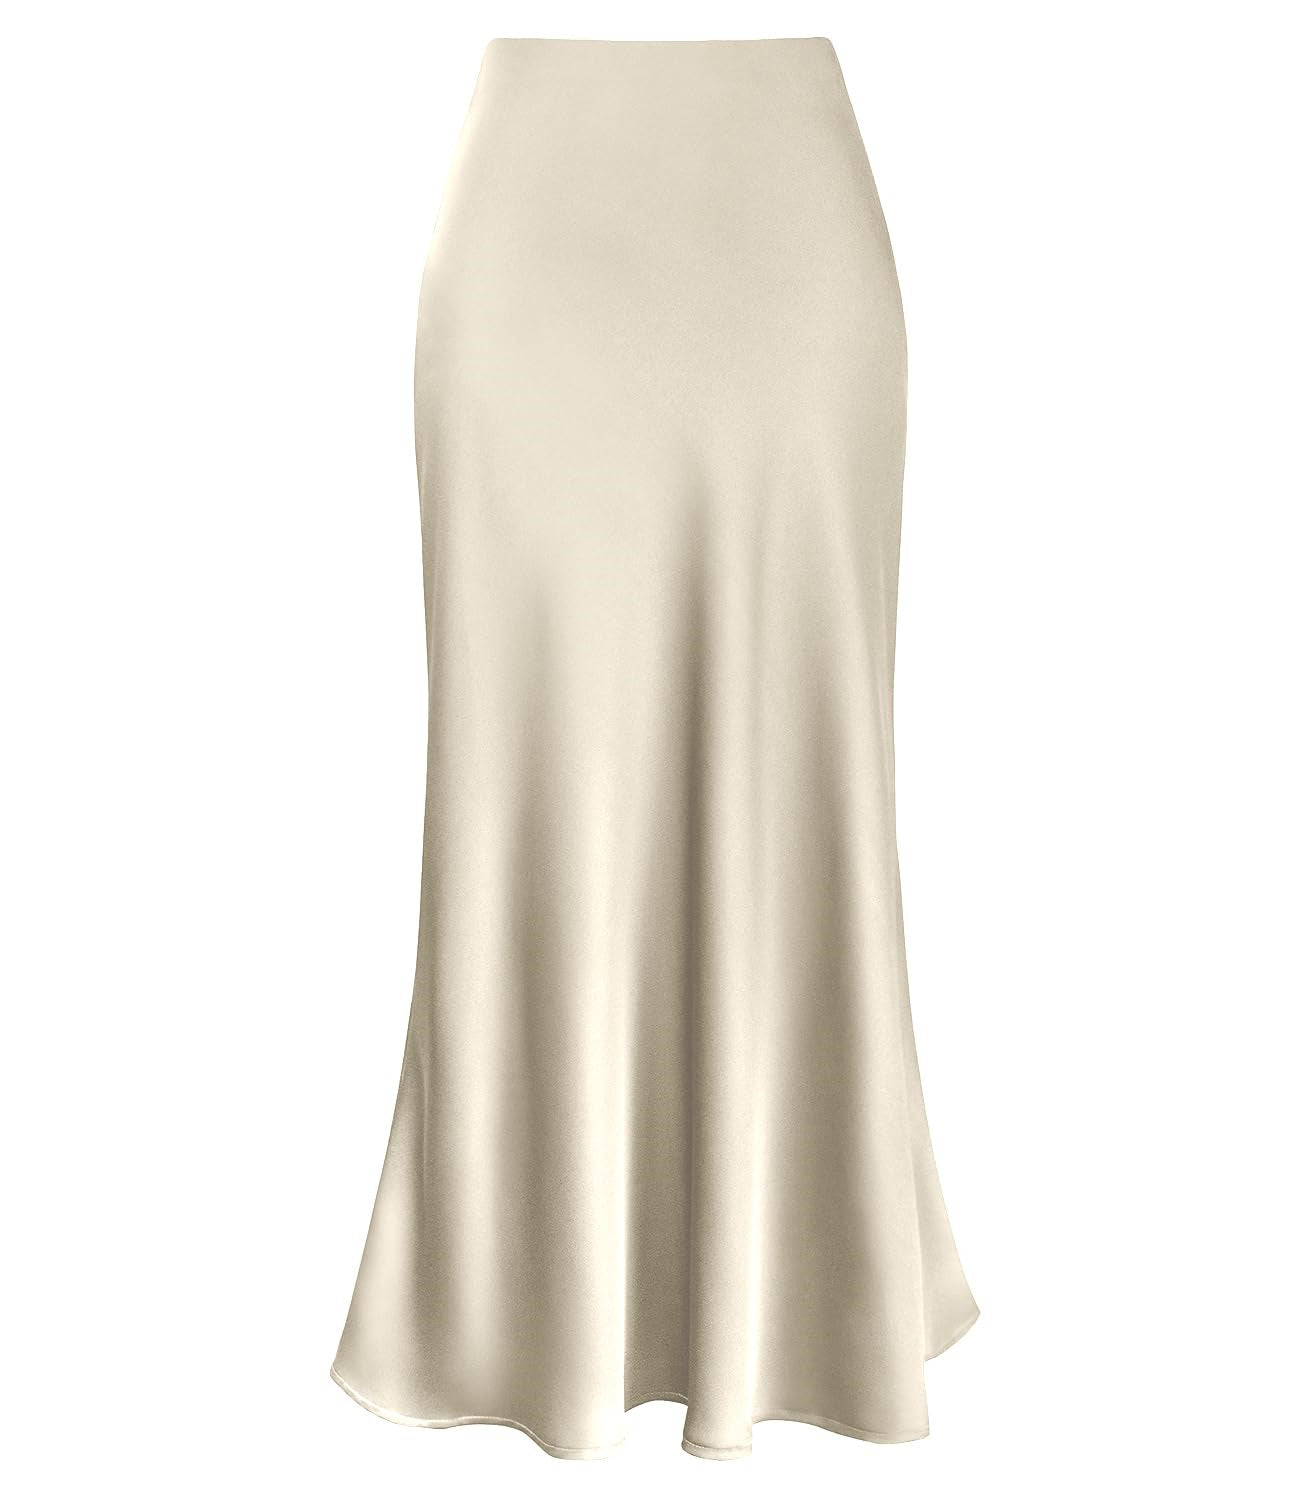 Women's Temperament Silky Texture Forged Surface Acetate Vertical High Waist Skirts